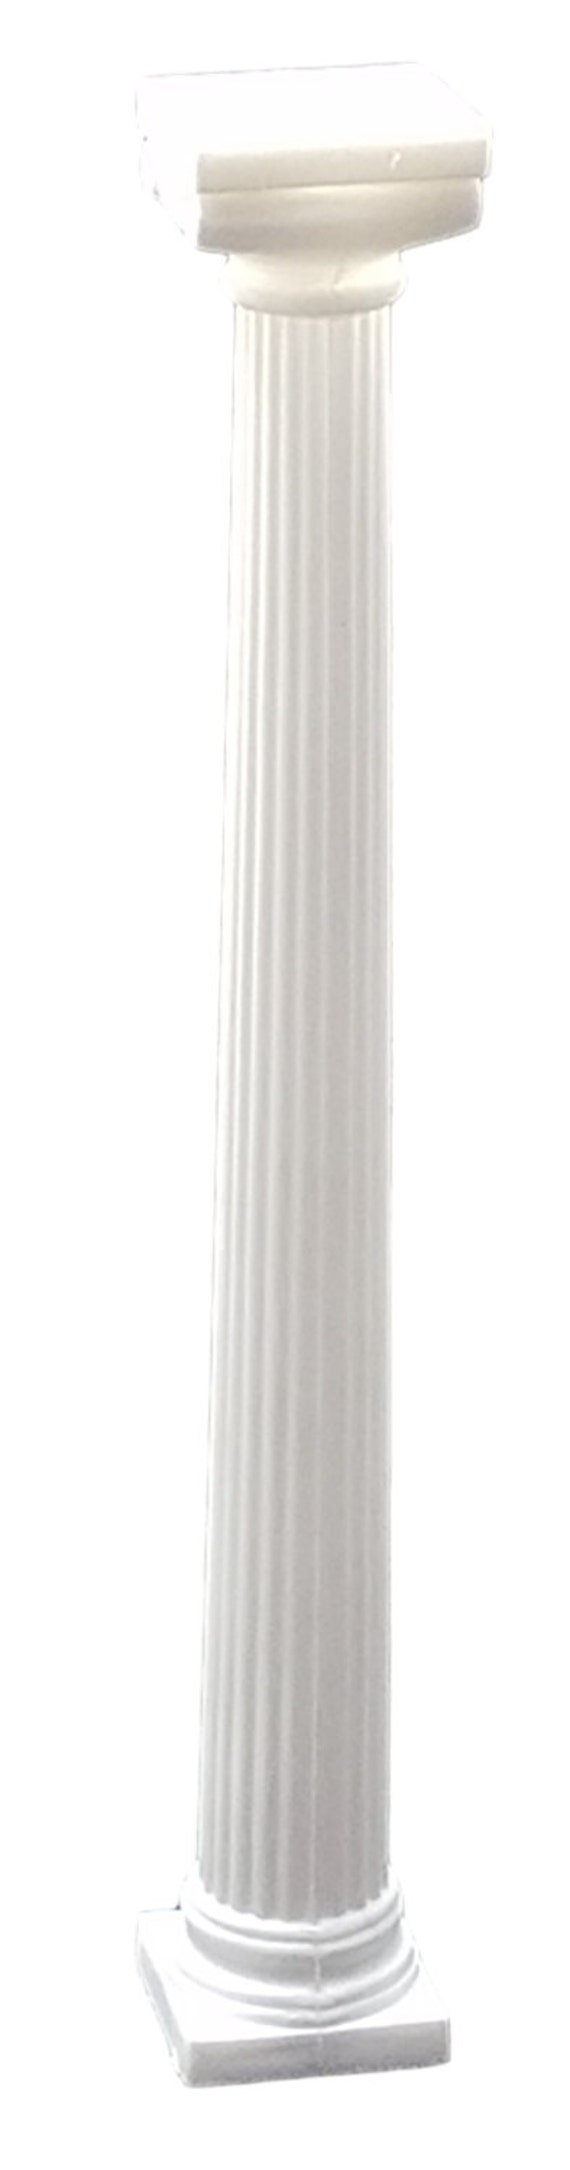 7 Pedestals Kit, White Pedestals, Styrofoam Pedestals, Stackable